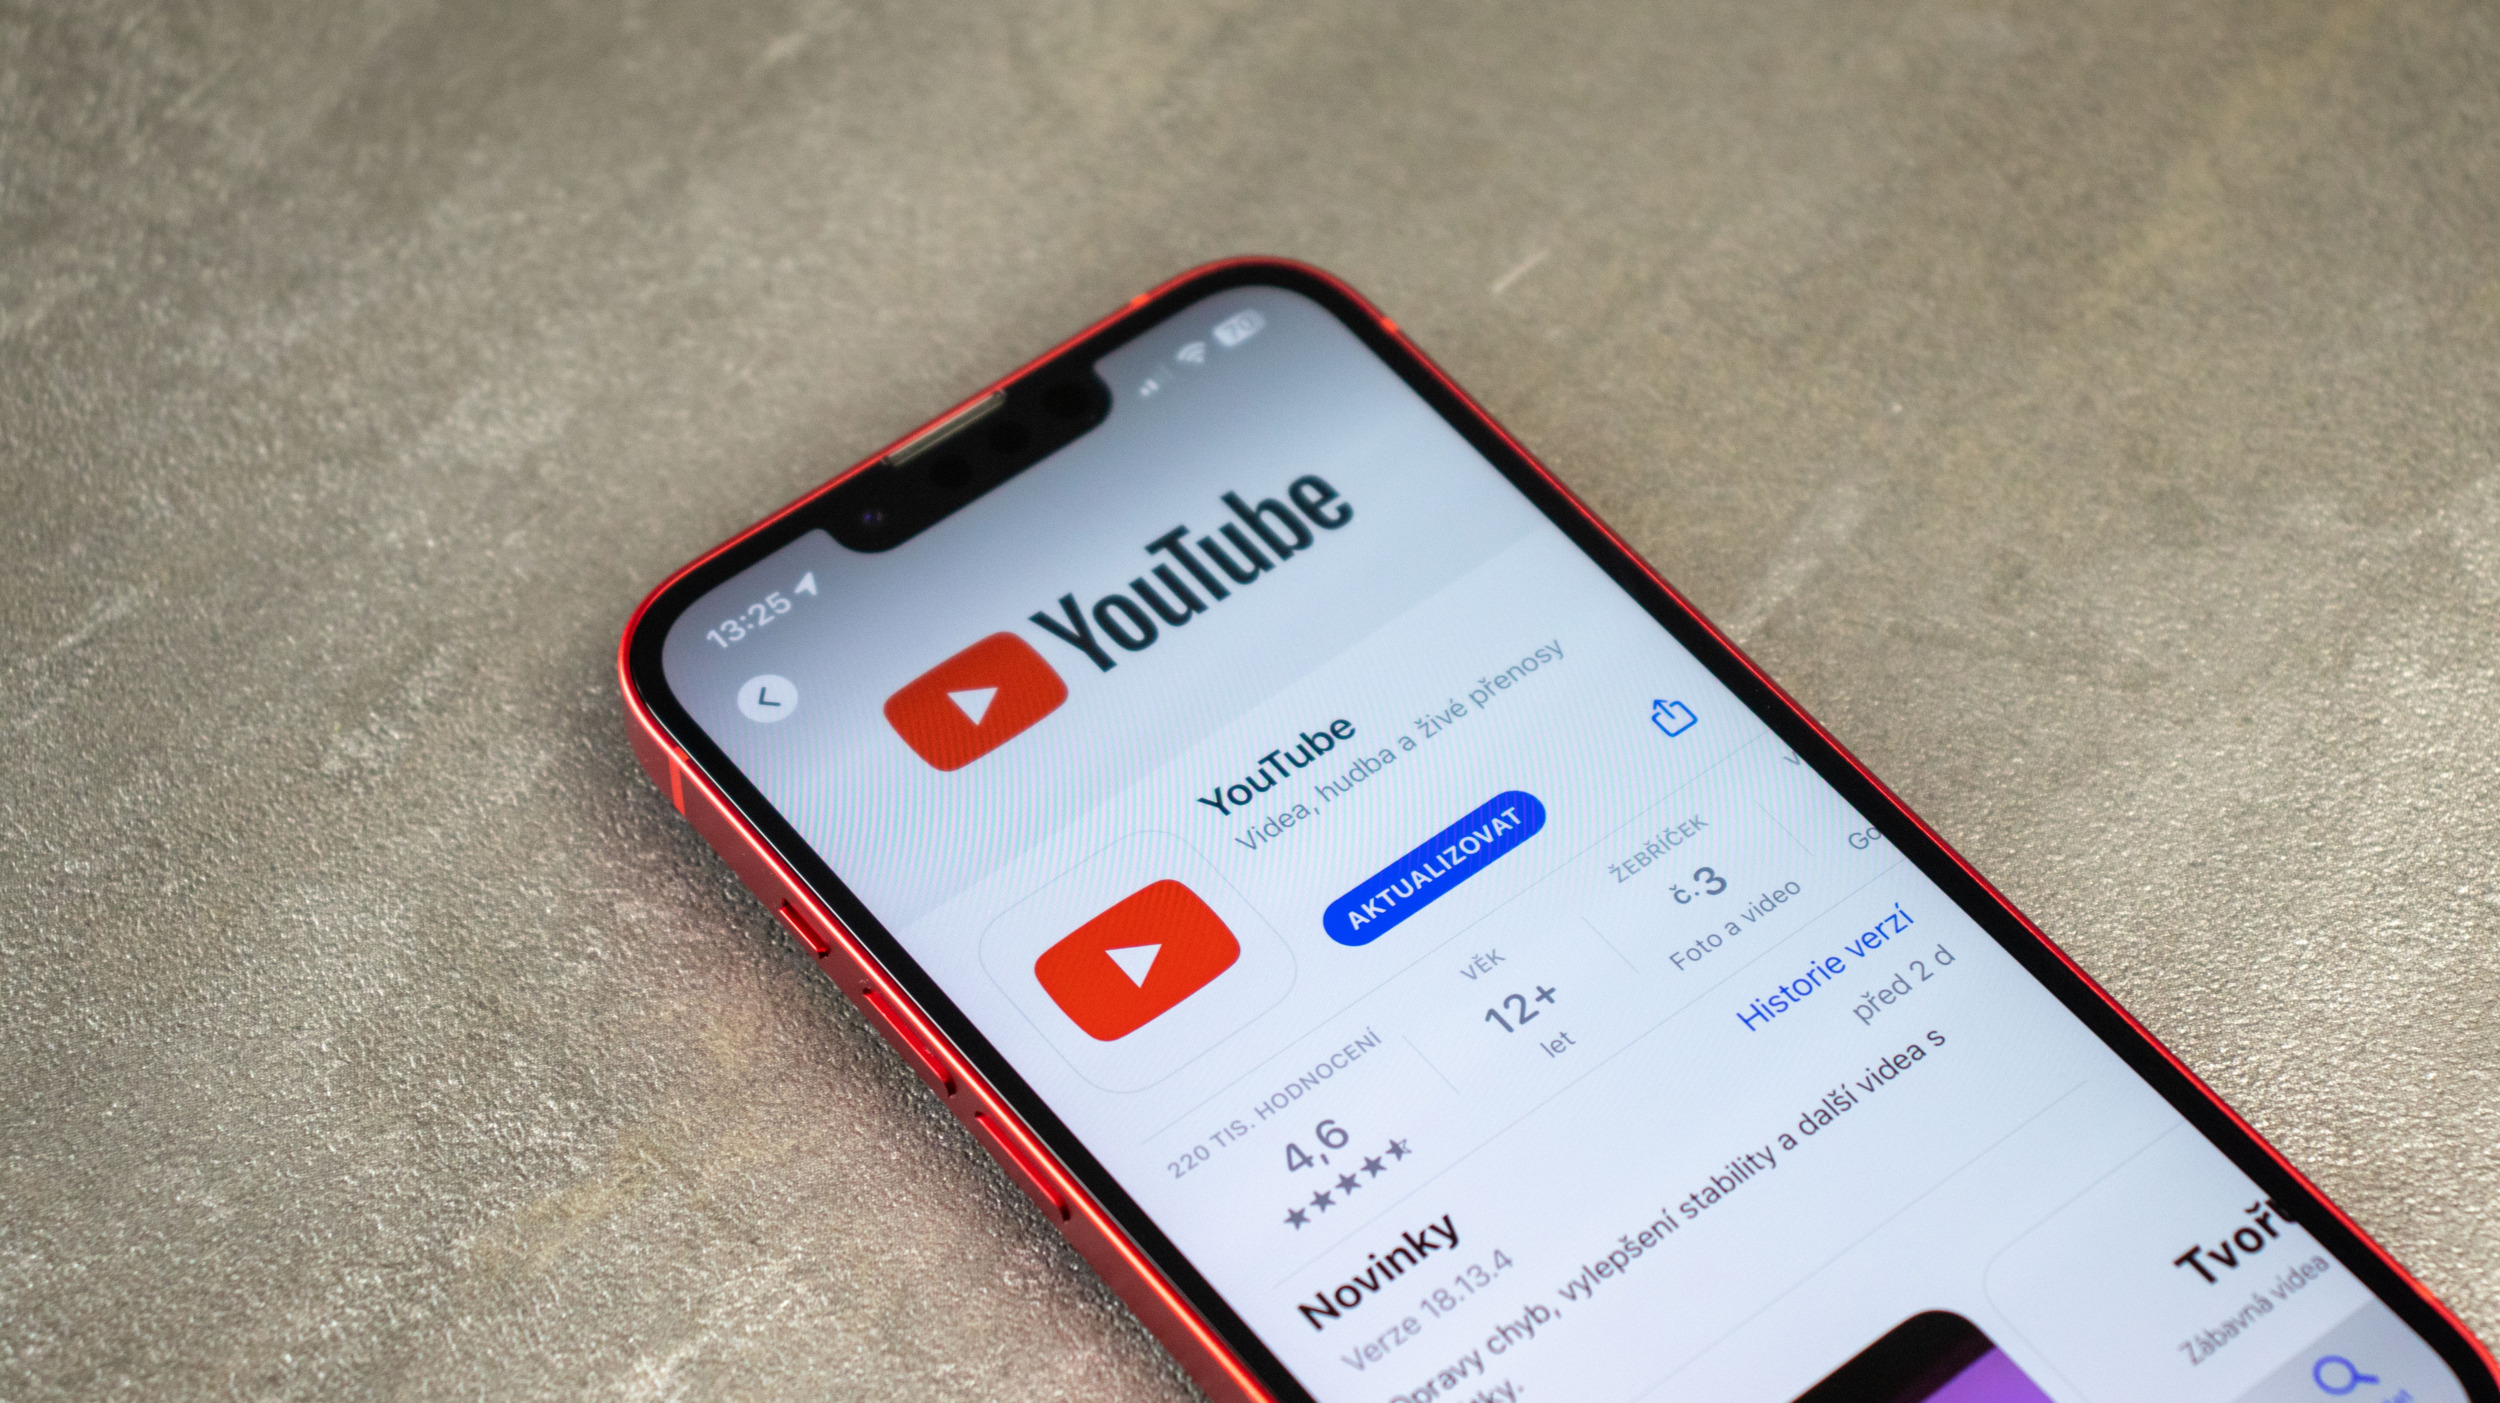 YouTube Create je nová aplikace pro editování videa s využitím AI